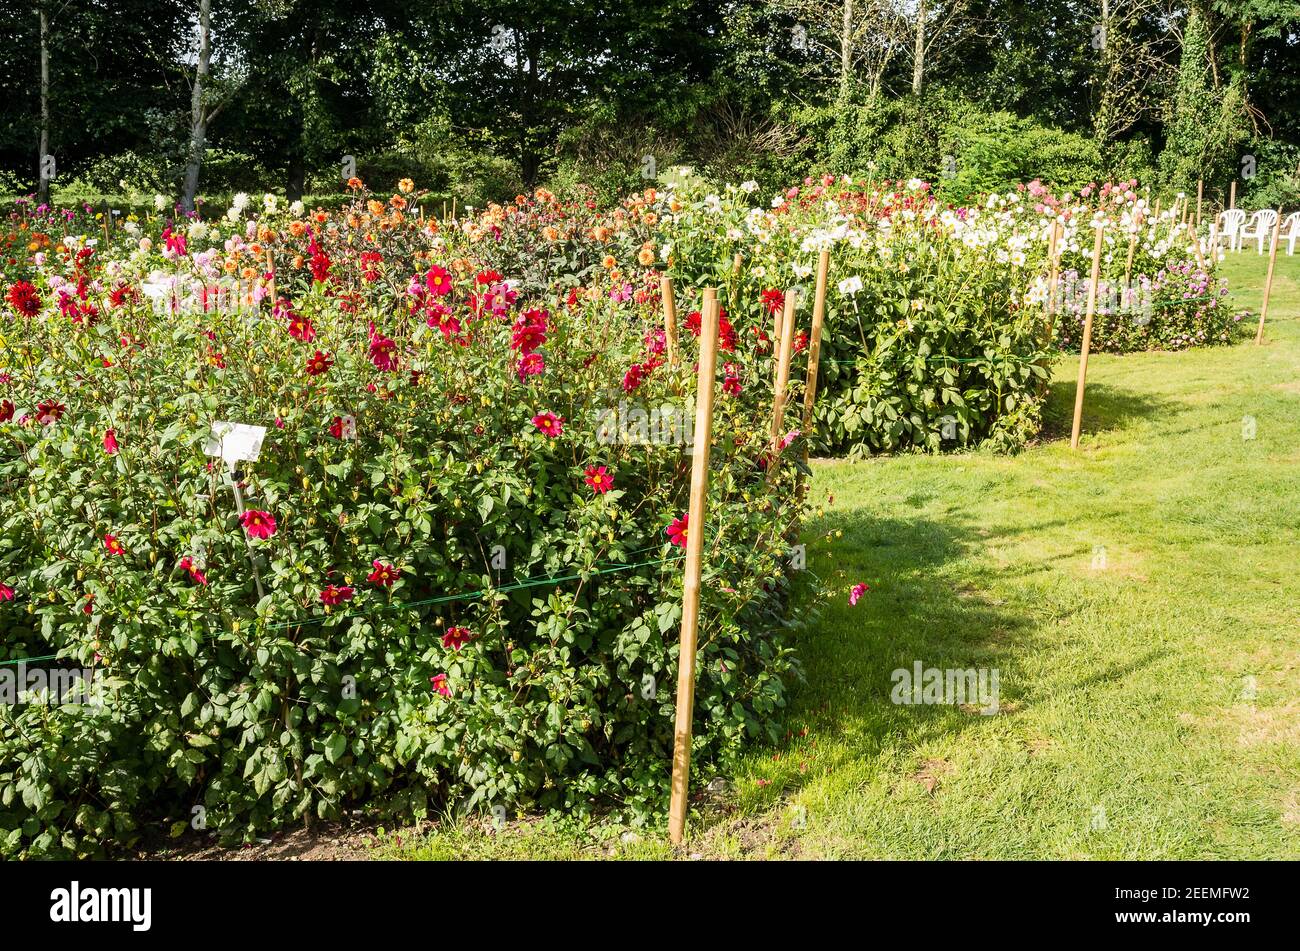 Parte del campo de exhibición en el vivero Gilberts Dahlia en Hampshire, Reino Unido, en septiembre. Las flores rojas prominentes son Dahlia coccinea. Foto de stock